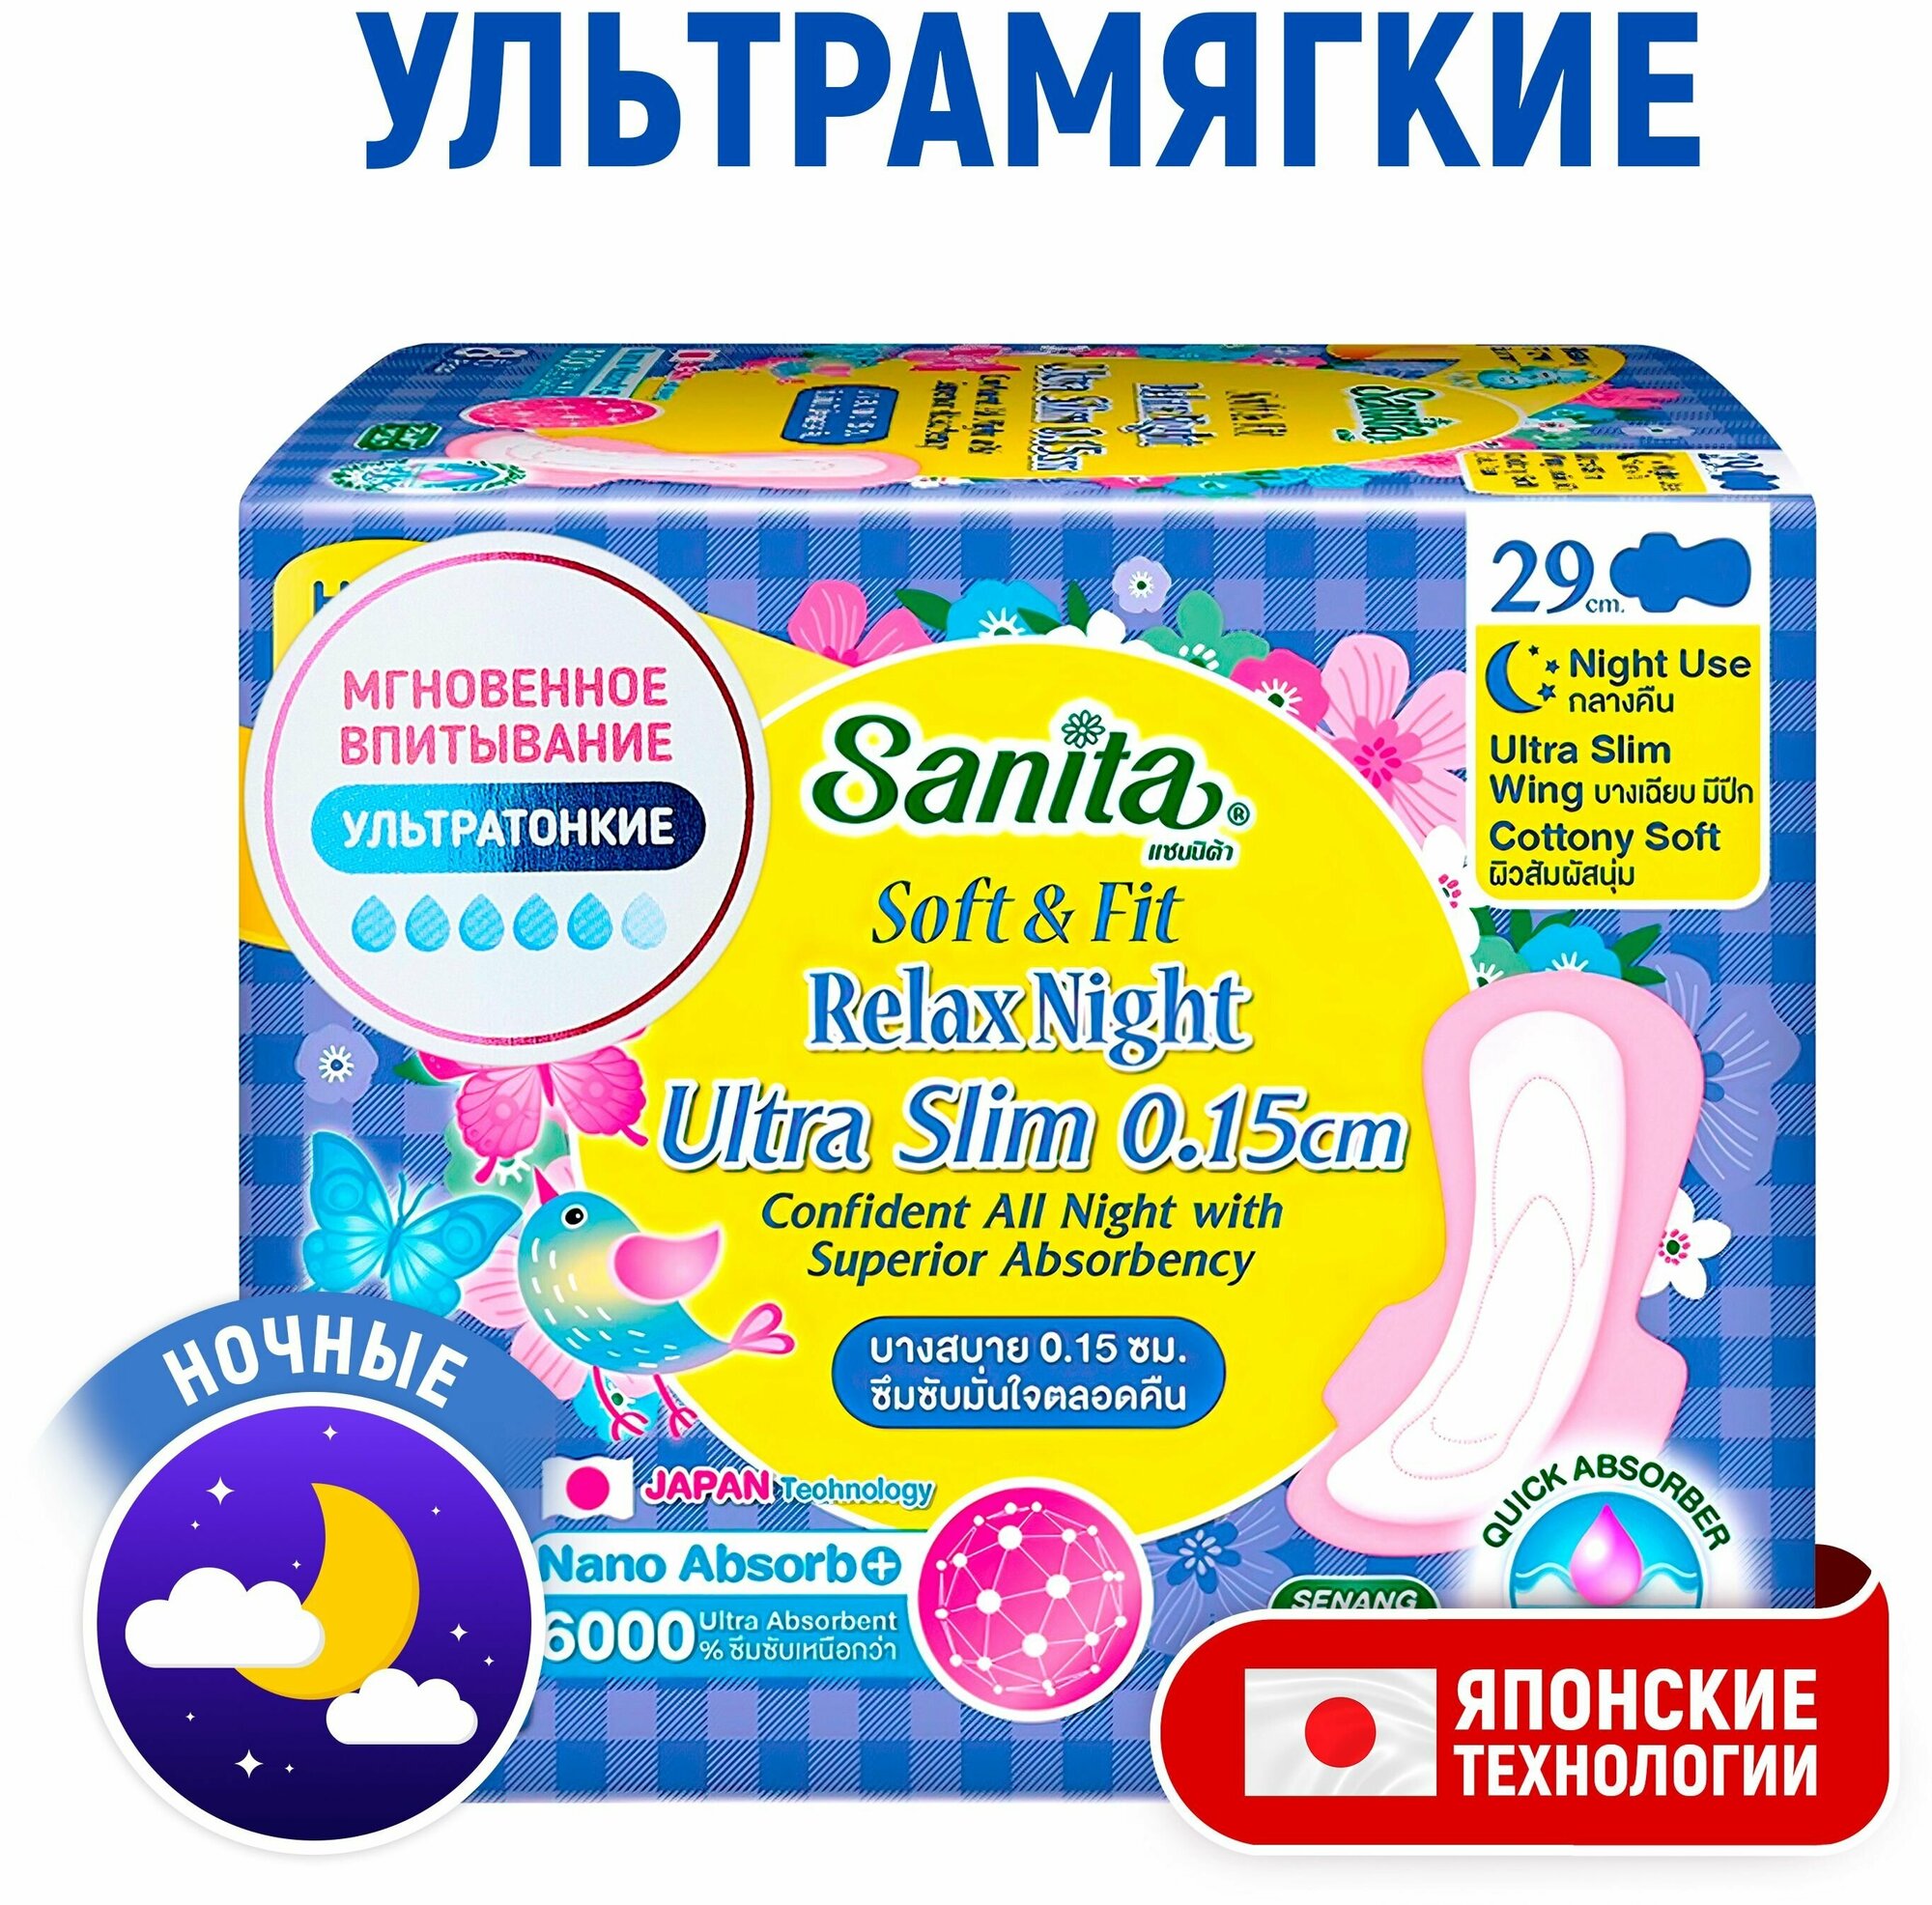 SANITA Прокладки ночные ультратонкие Soft&Fit Relax Night Ultra Slim женские гигиенические / Одноразовые, с крылышками, без запаха / Японские технологии, 29 см, 8 шт